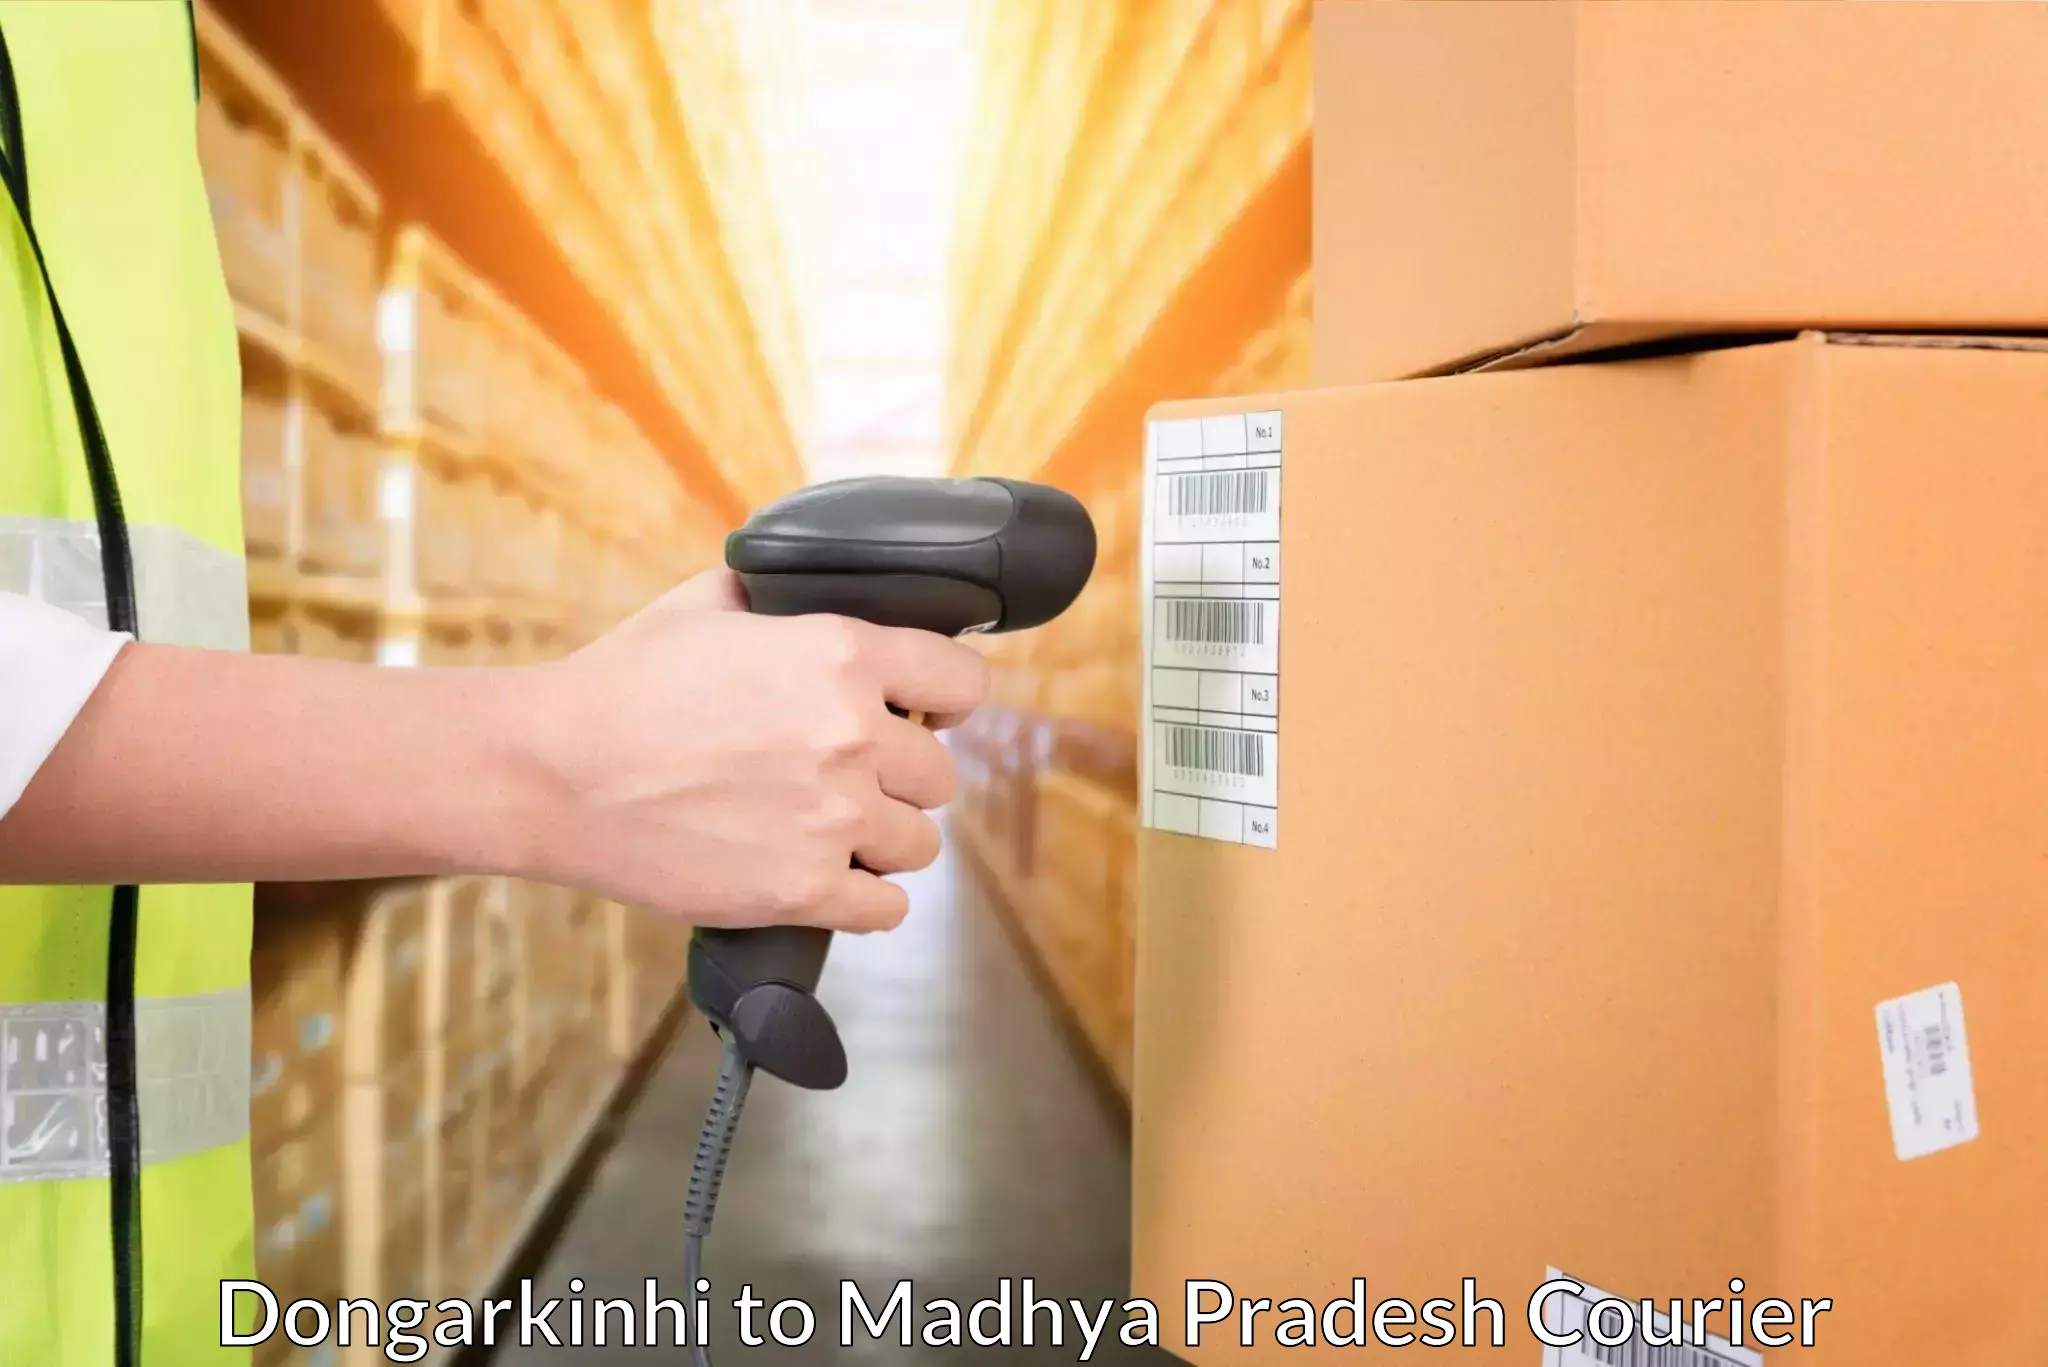 Urgent courier needs Dongarkinhi to Sardarpur